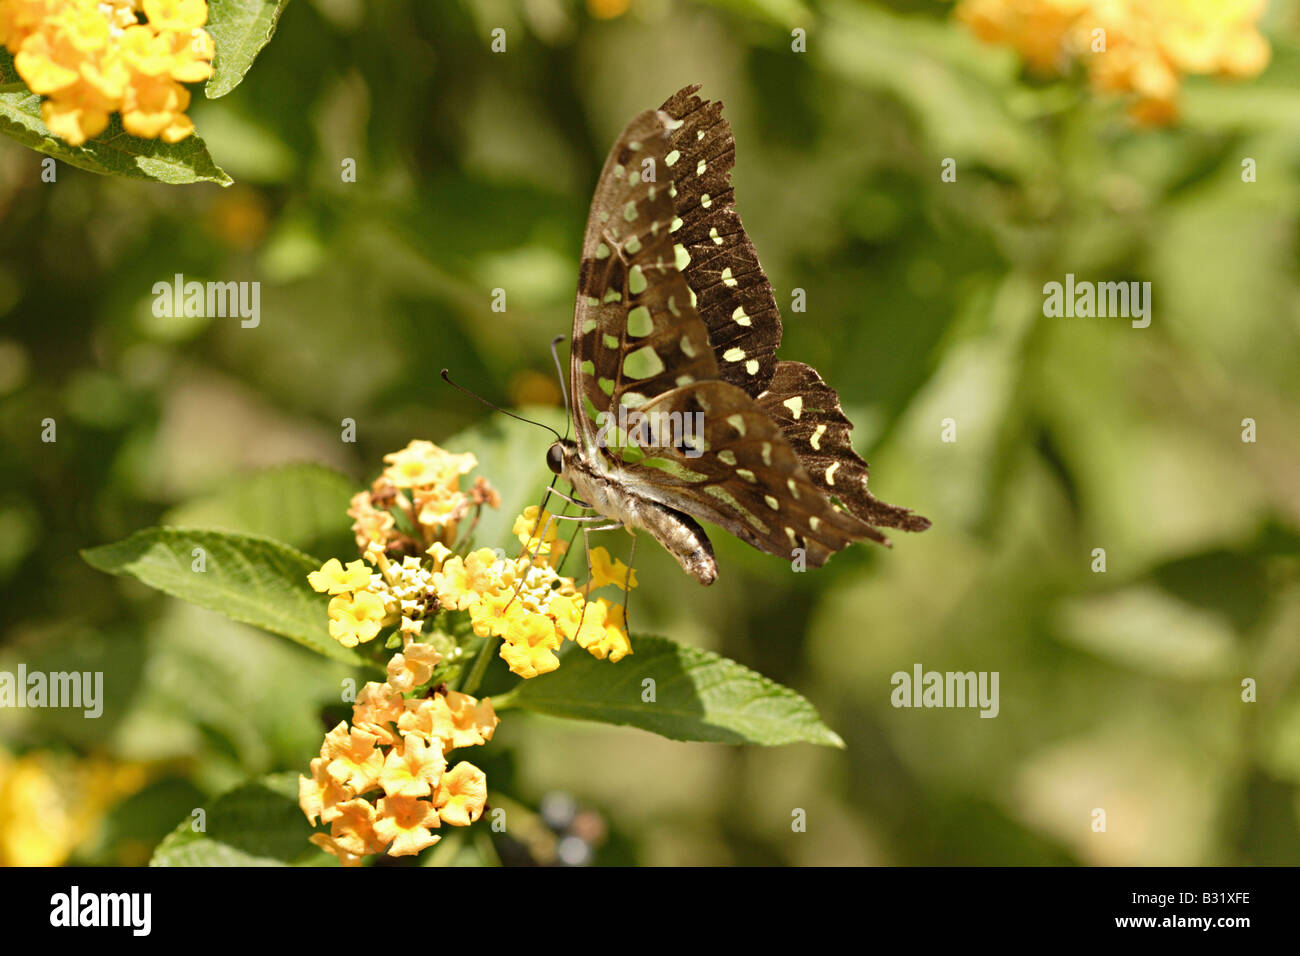 Schwalbenschwanz Schmetterlinge sind große, bunte Schmetterlinge, die die Familie Papilionidae bilden. Stockfoto